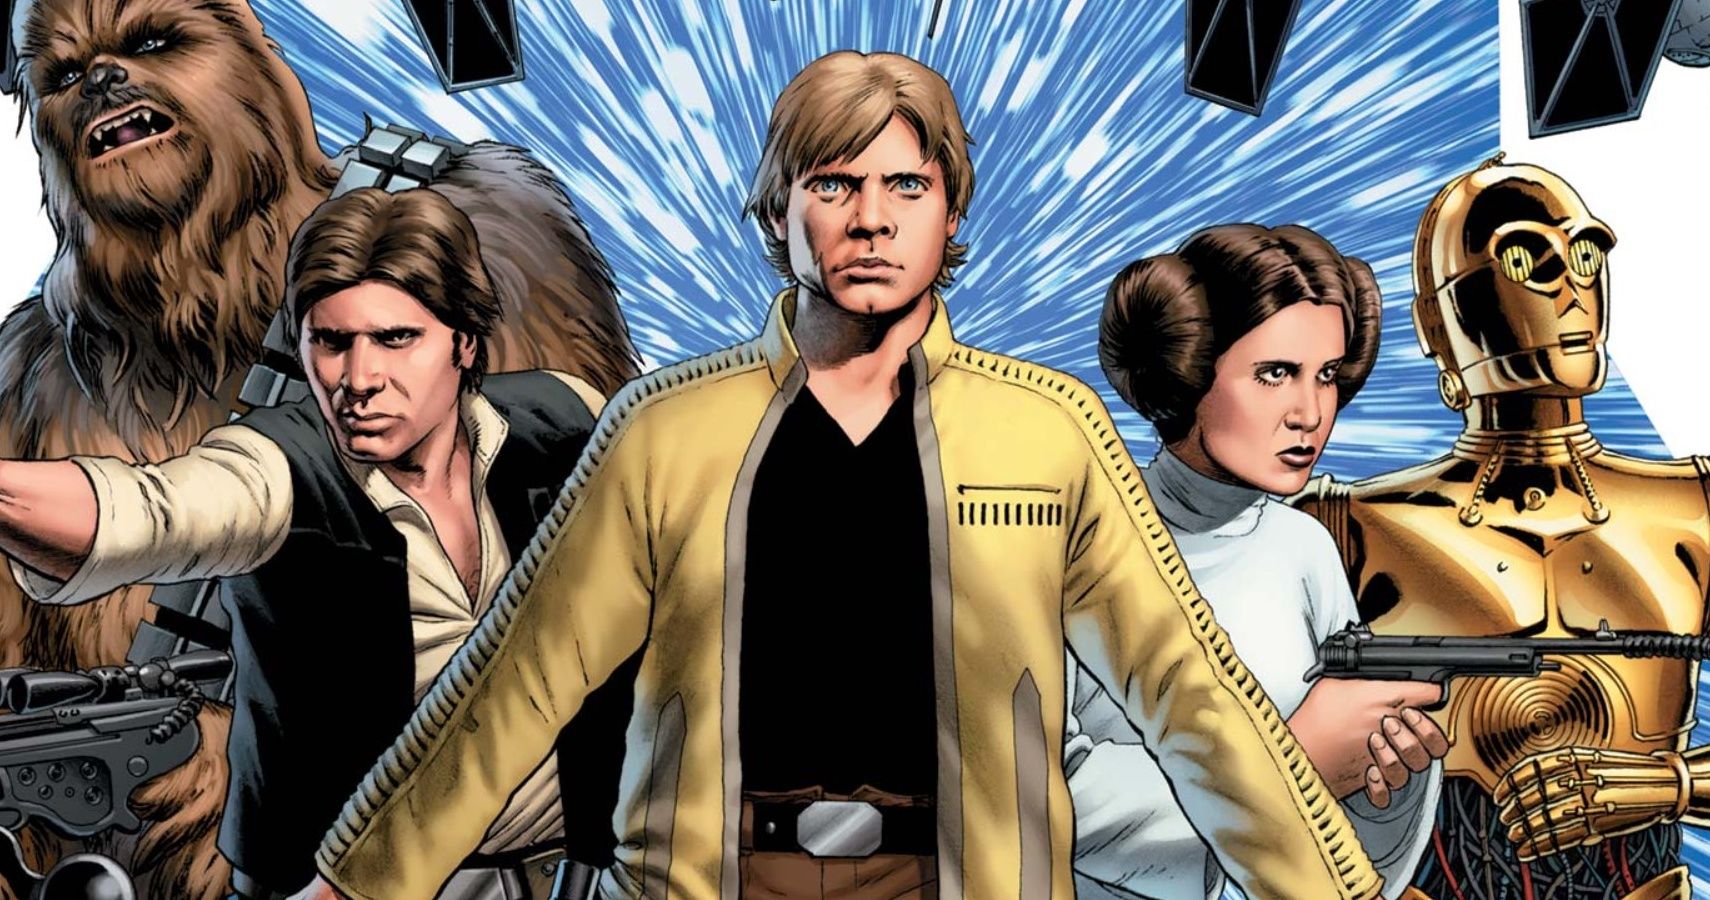 Luke Skywalker fights in Star Wars Marvel comics